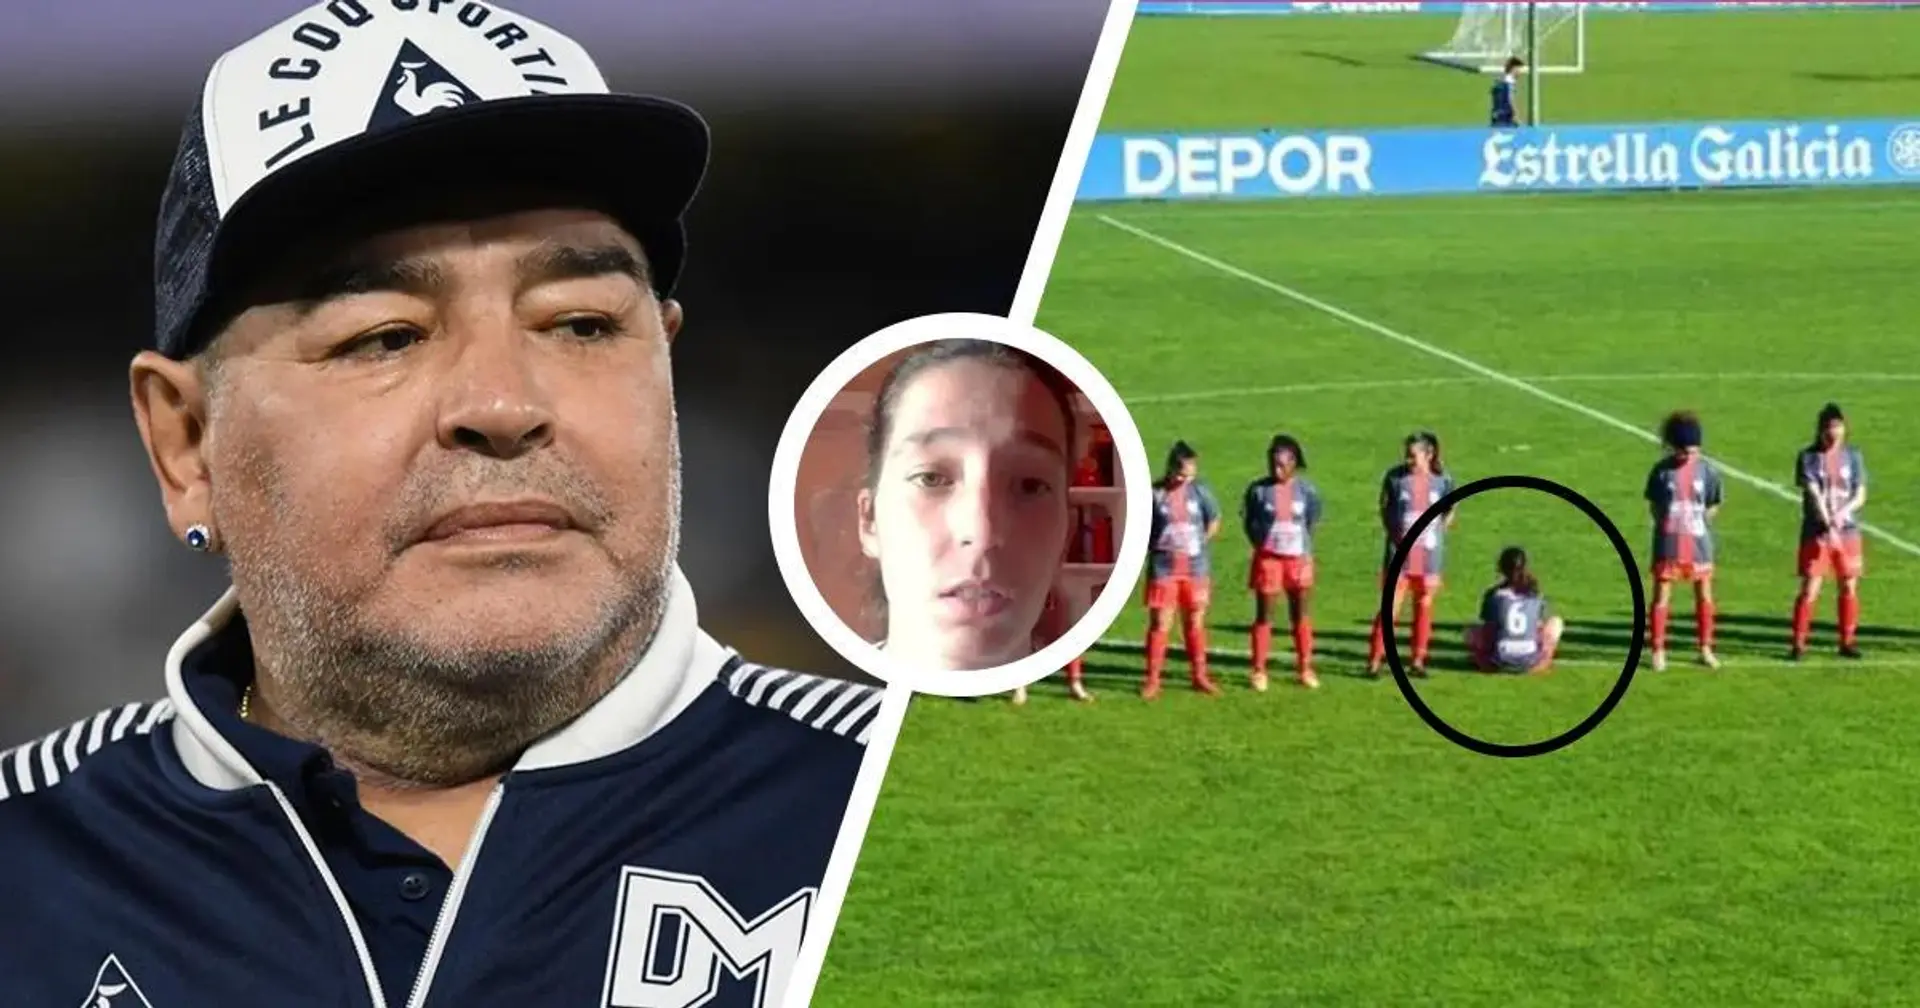 Paula Dapena, la joueuse qui a refusé d'observer une minute de silence pour Maradona: "Je ne l'ai pas respecté parce que c'était un violeur"